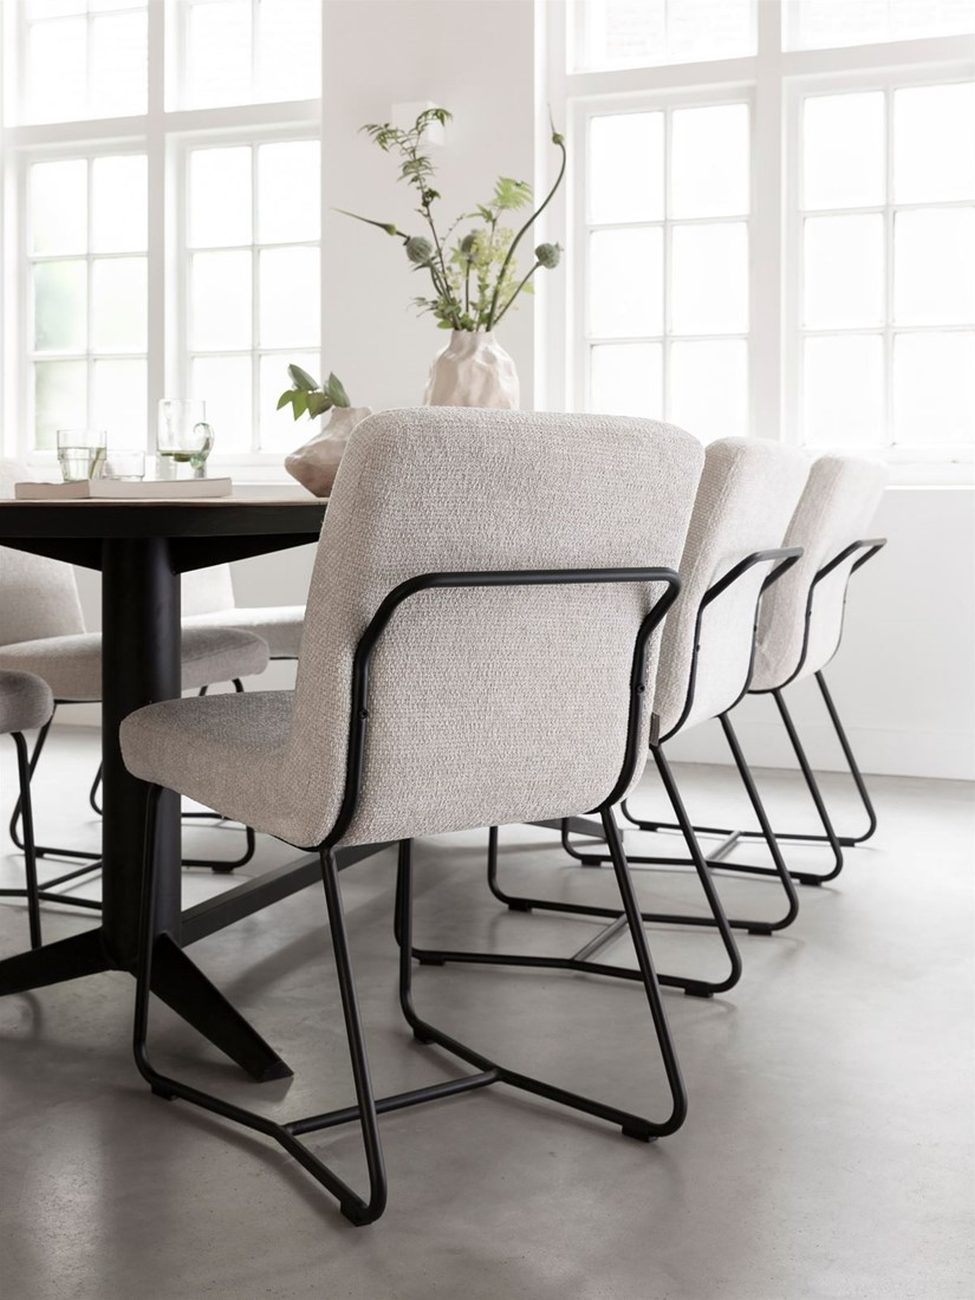 Der Esszimmerstuhl Zola überzeugt mit seinem modernen Design. Gefertigt wurde er aus Stoff, welcher einen natürlichen Farbton besitzt. Das Gestell ist aus Metall und hat eine schwarze Farbe. Der Stuhl besitzt eine Größe von 87x46x56 cm.